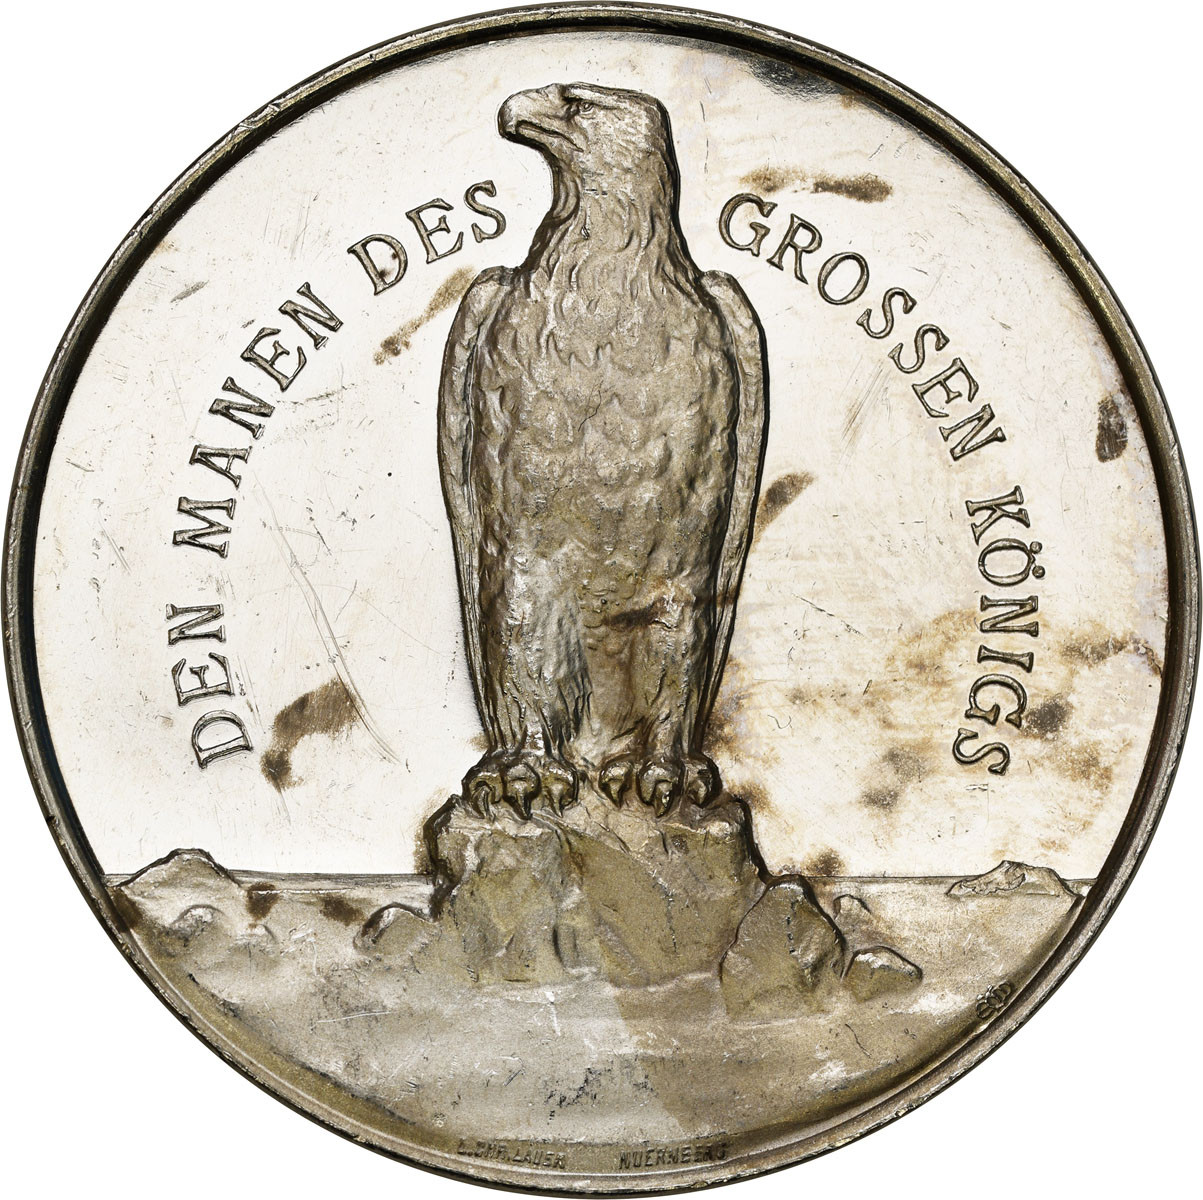 Niemcy, Prusy. Fryderyk II Wielki (1712-1912). Medal 1912, srebro